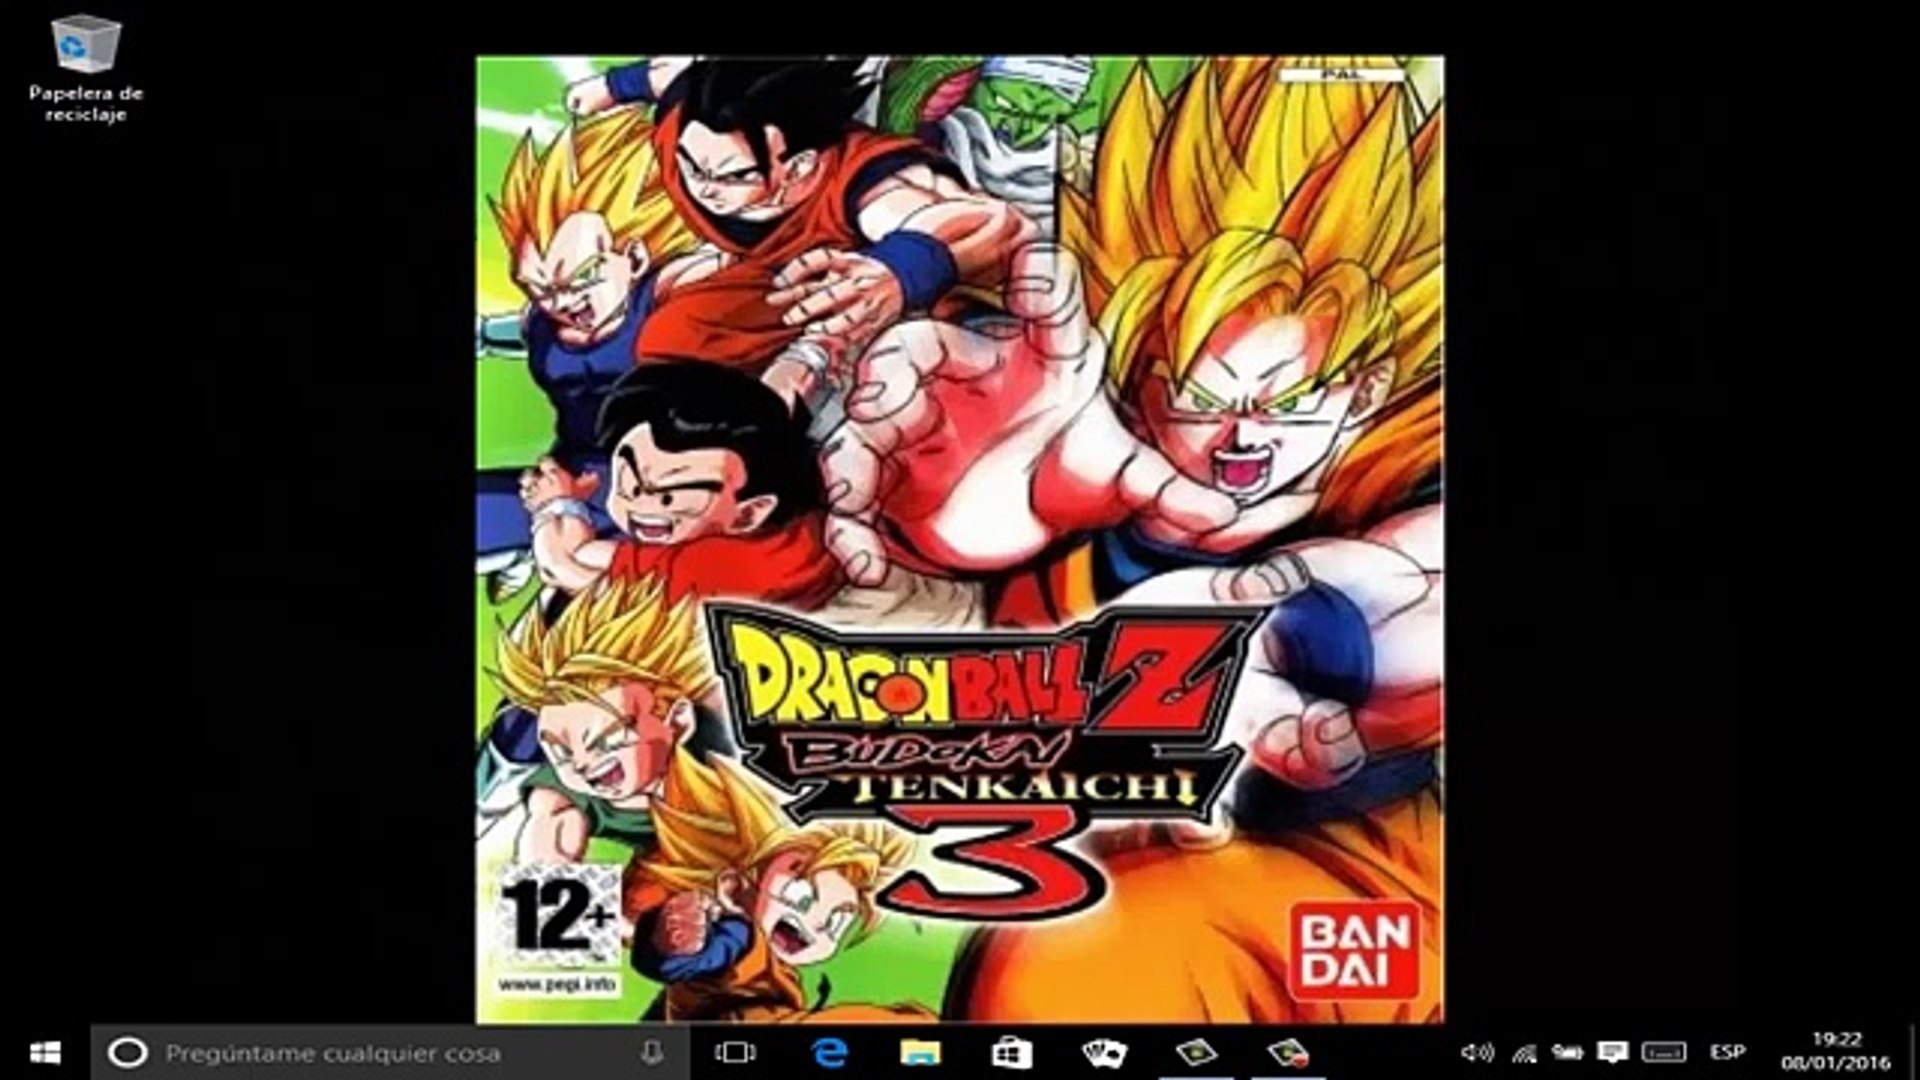 Descargar Dragon Ball Z Budokai Tenkaichi 3 PC (Original) 1 Link 2017 !! -  Vídeo Dailymotion